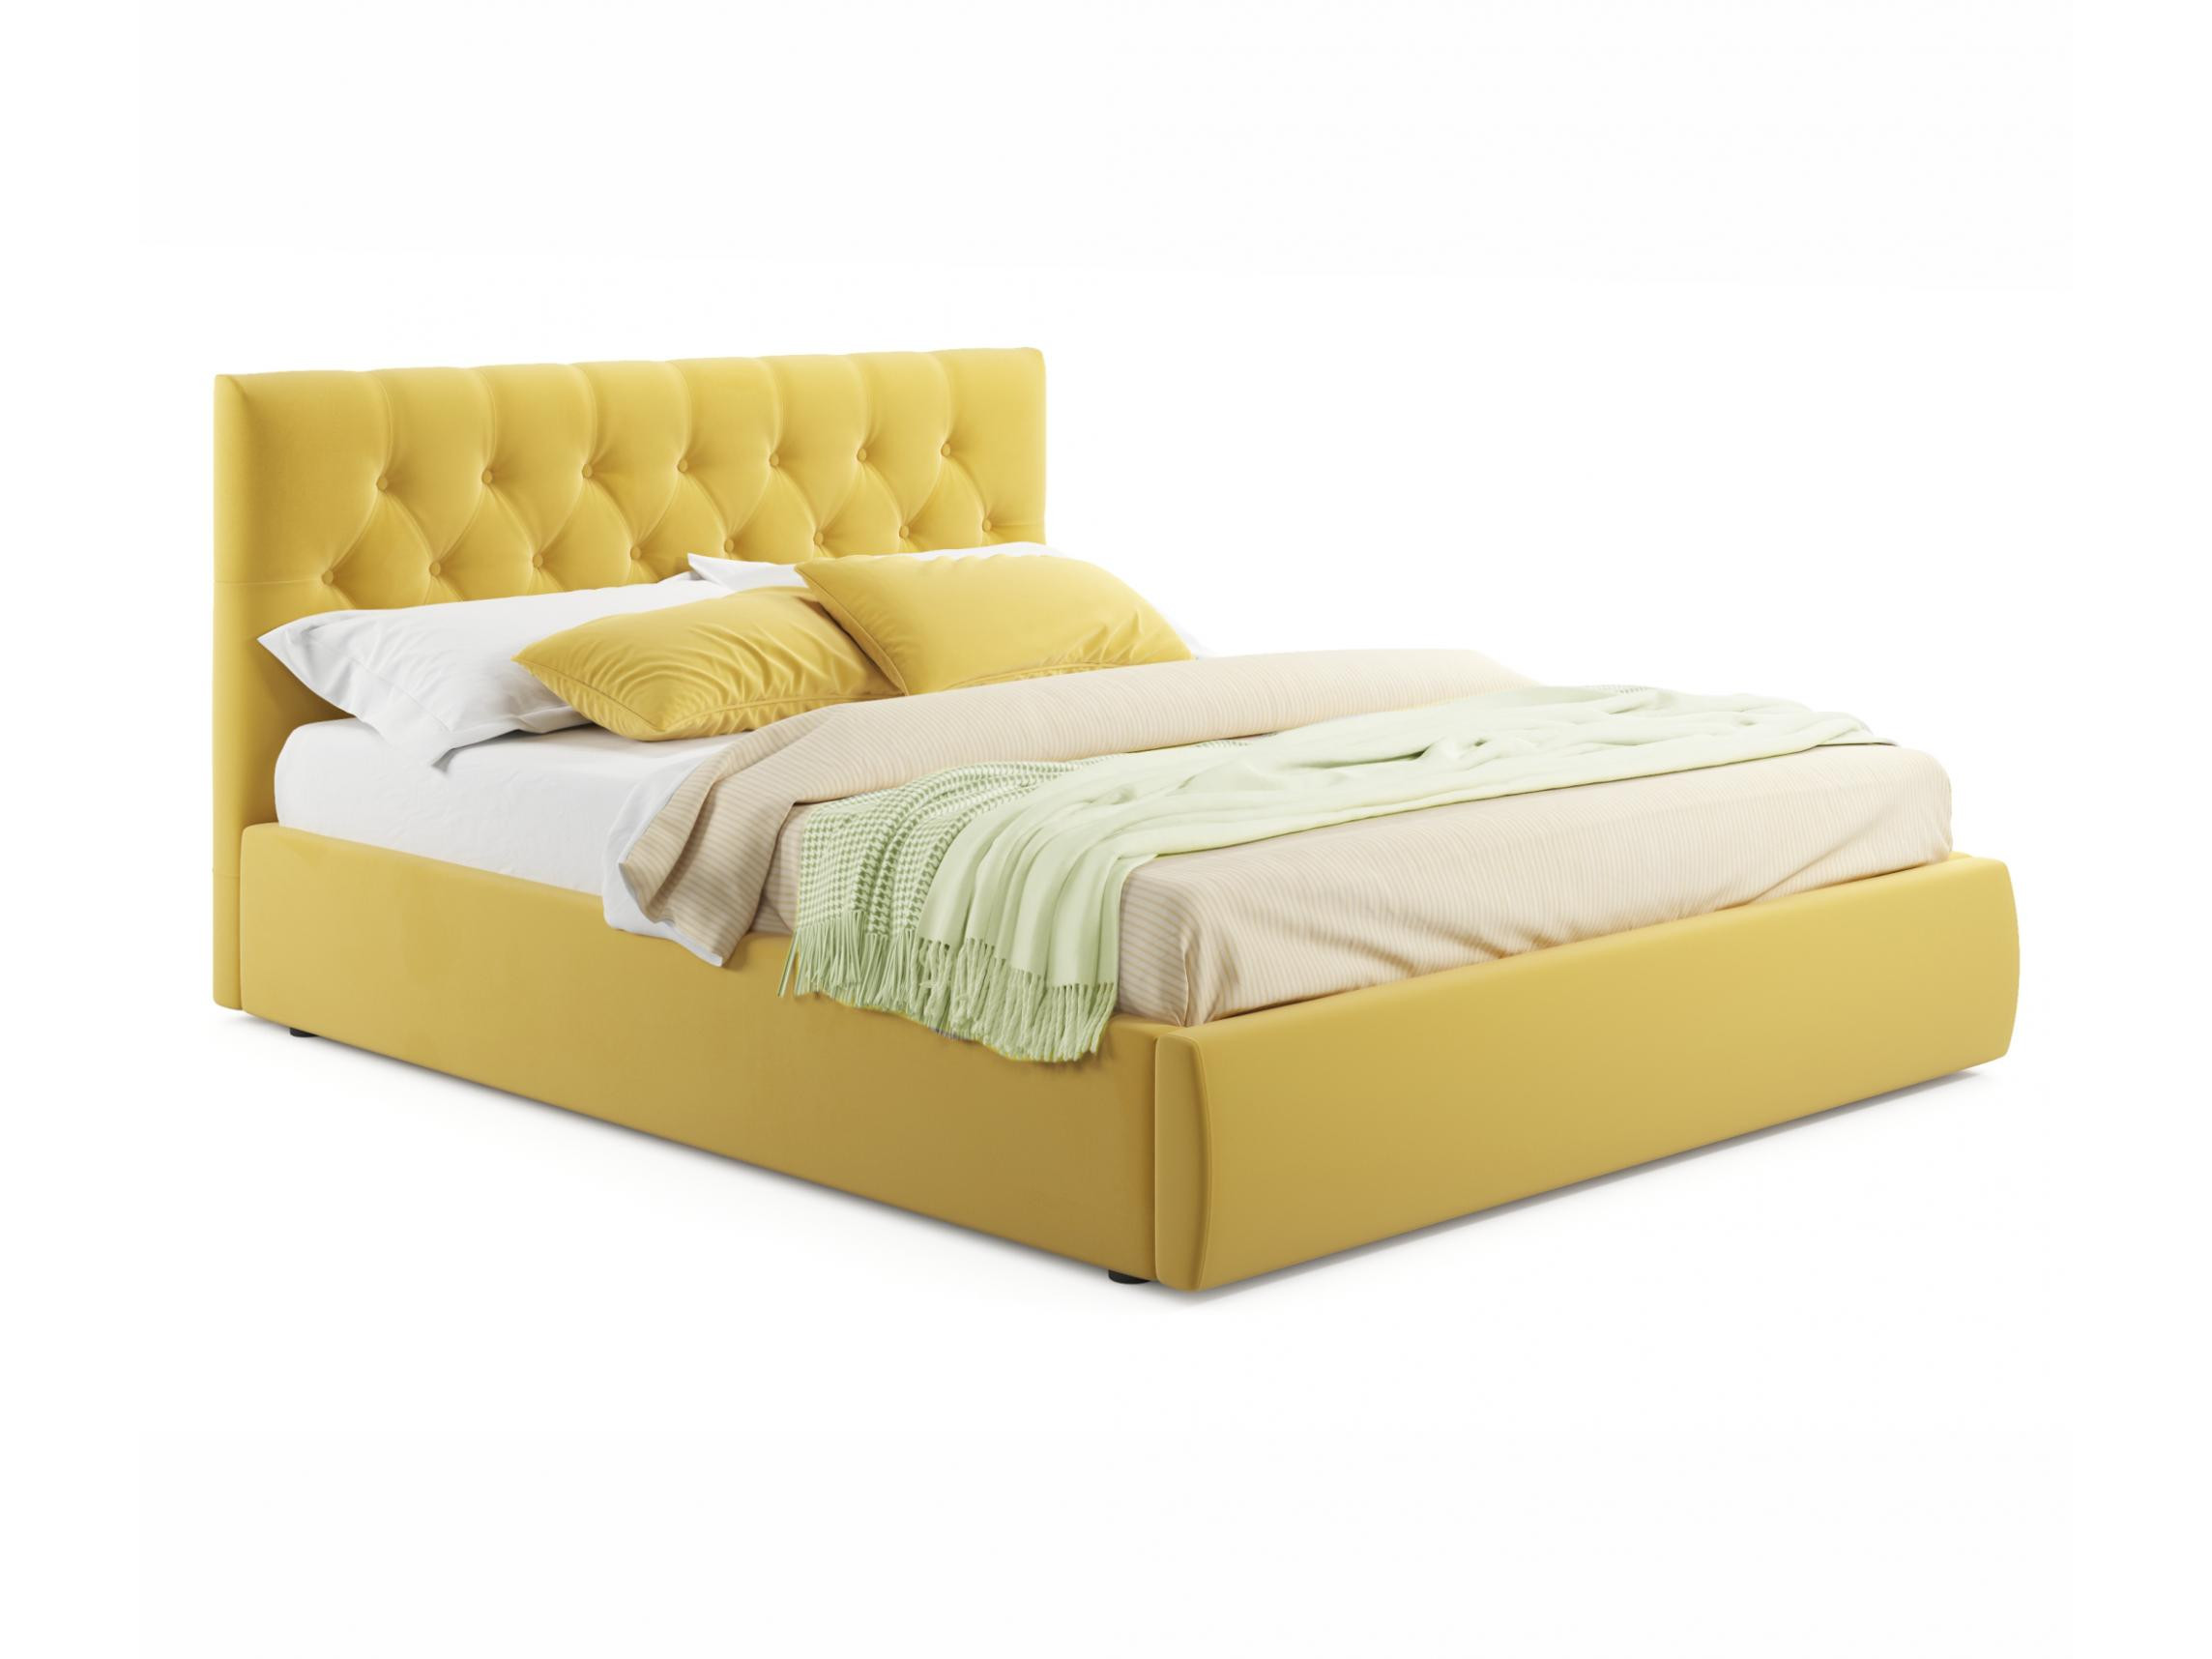 Мягкая кровать Verona 1800 желтая с подъемным механизмом желтый, Желтый, Велюр, ДСП мягкая кровать verona 1600 желтая с подъемным механизмом желтый желтый велюр дсп